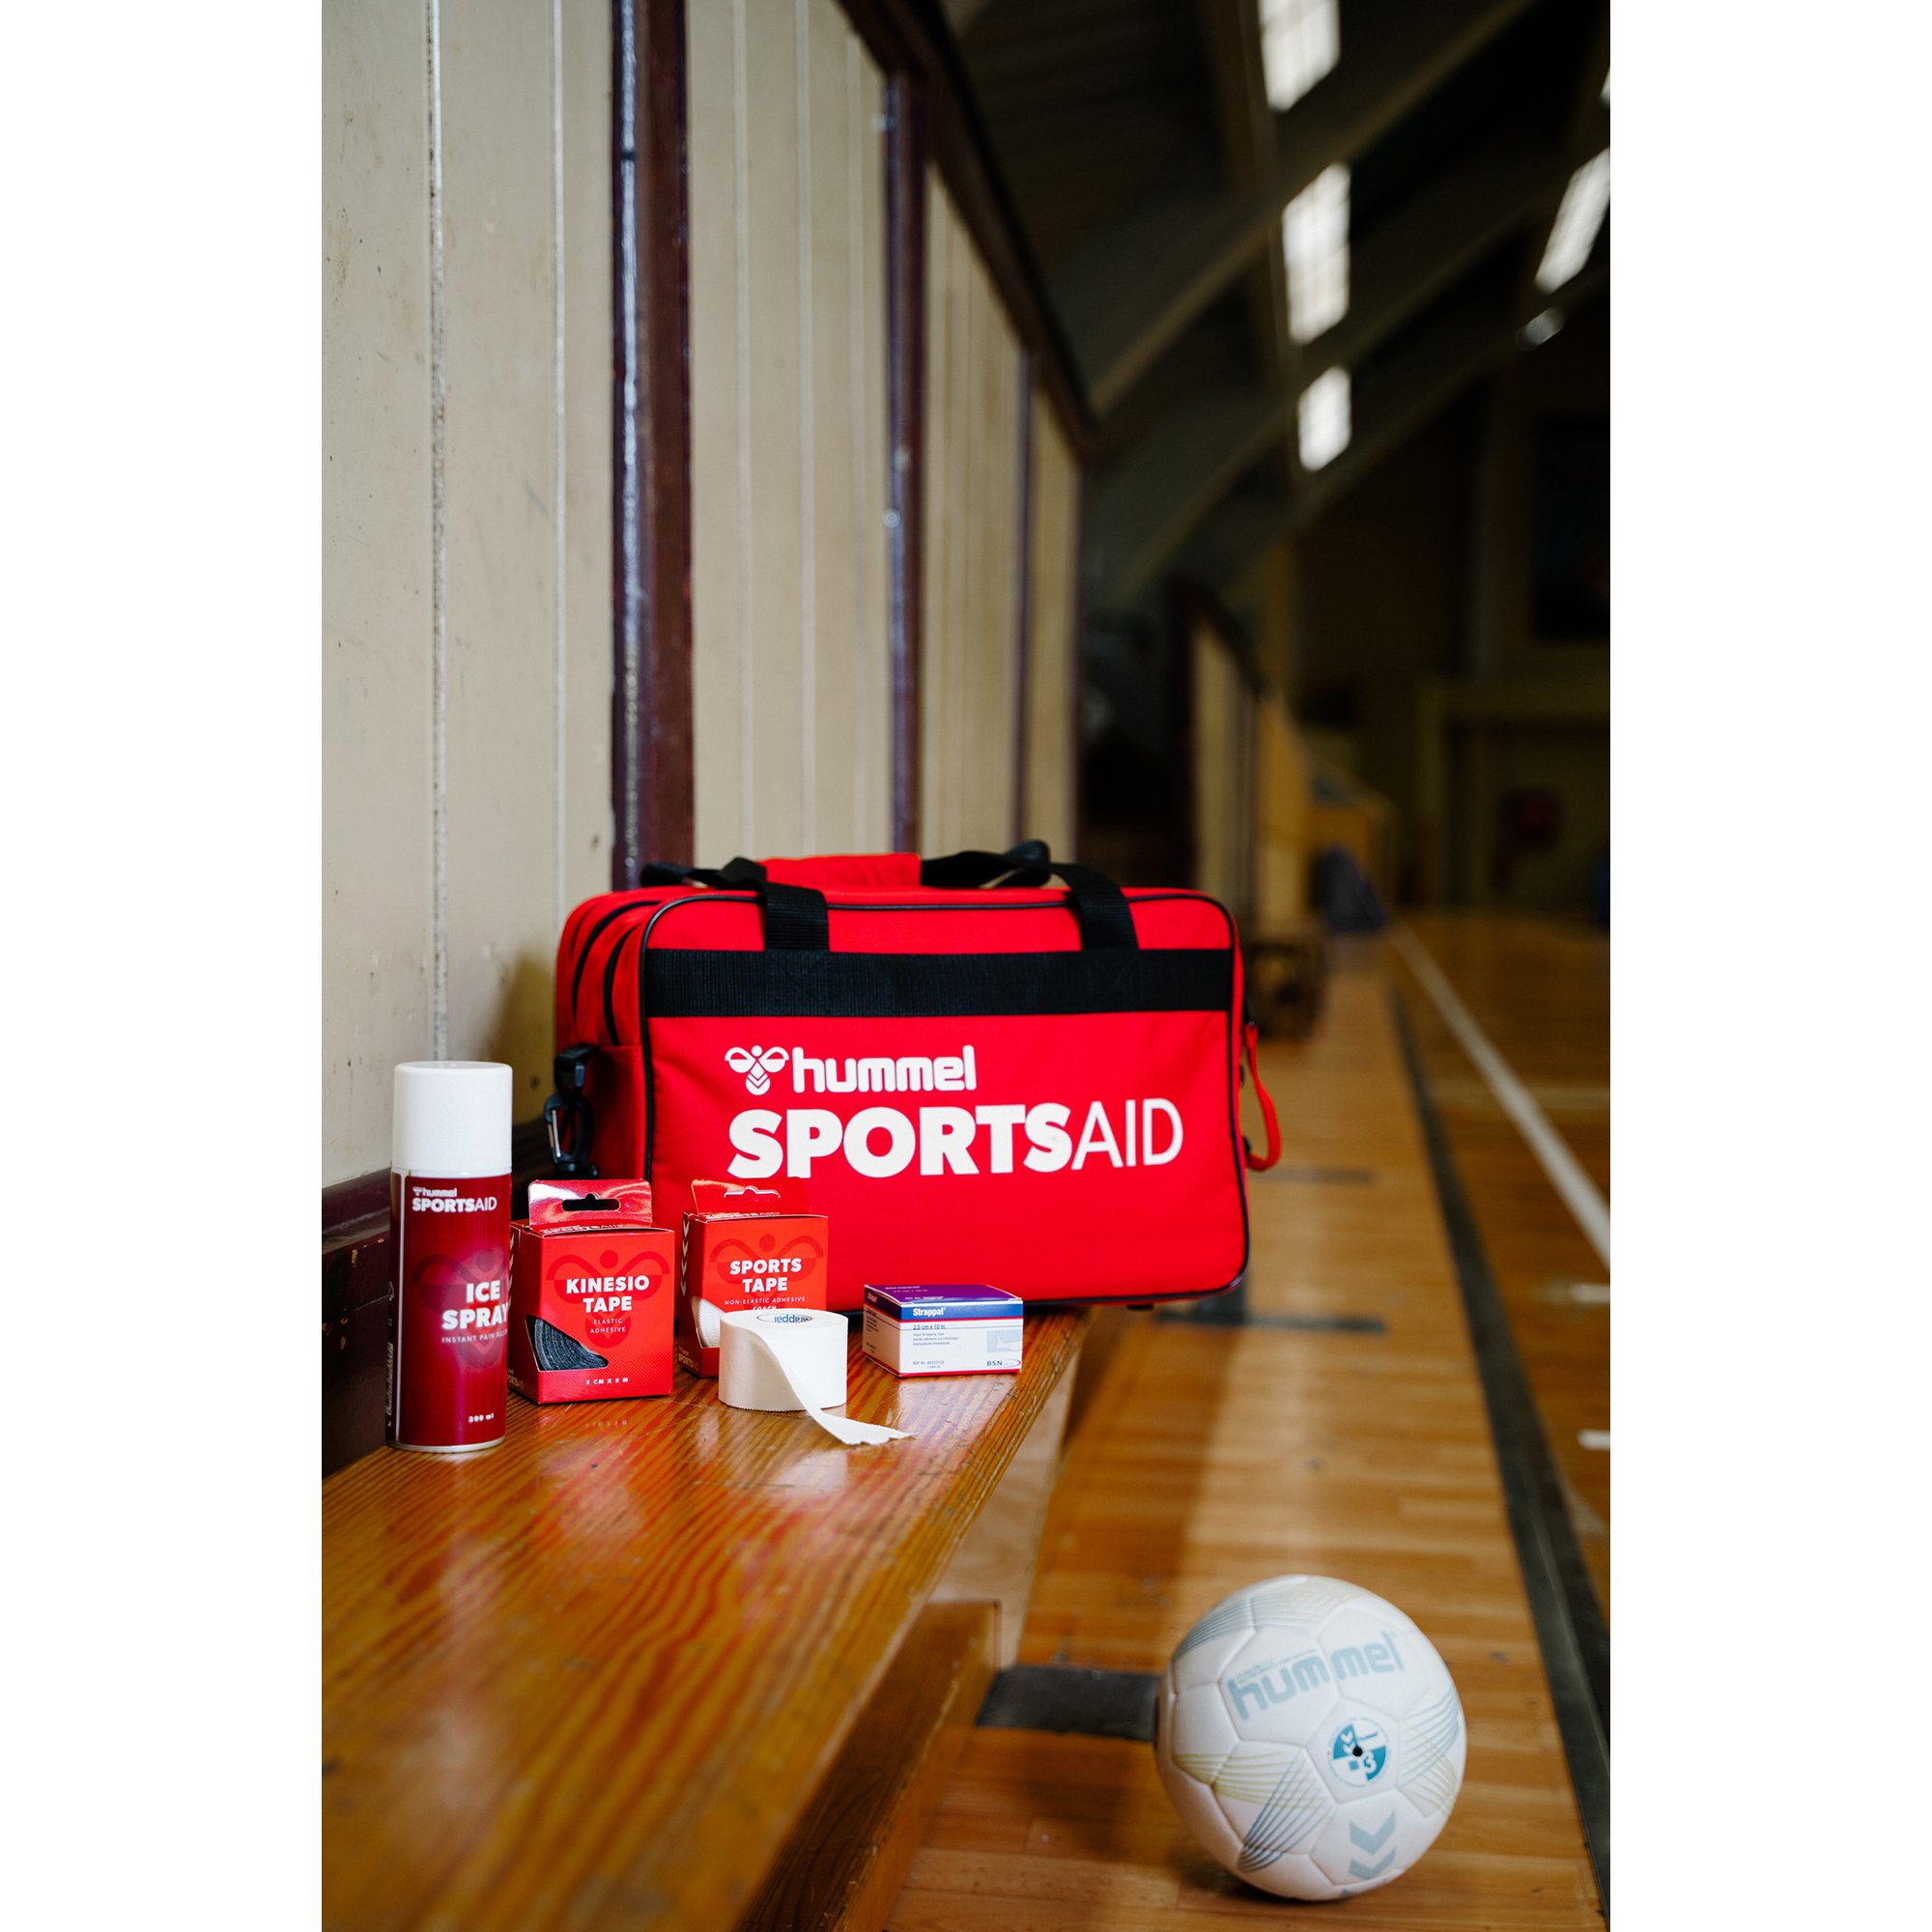 Sportsaid First Aid Bag M